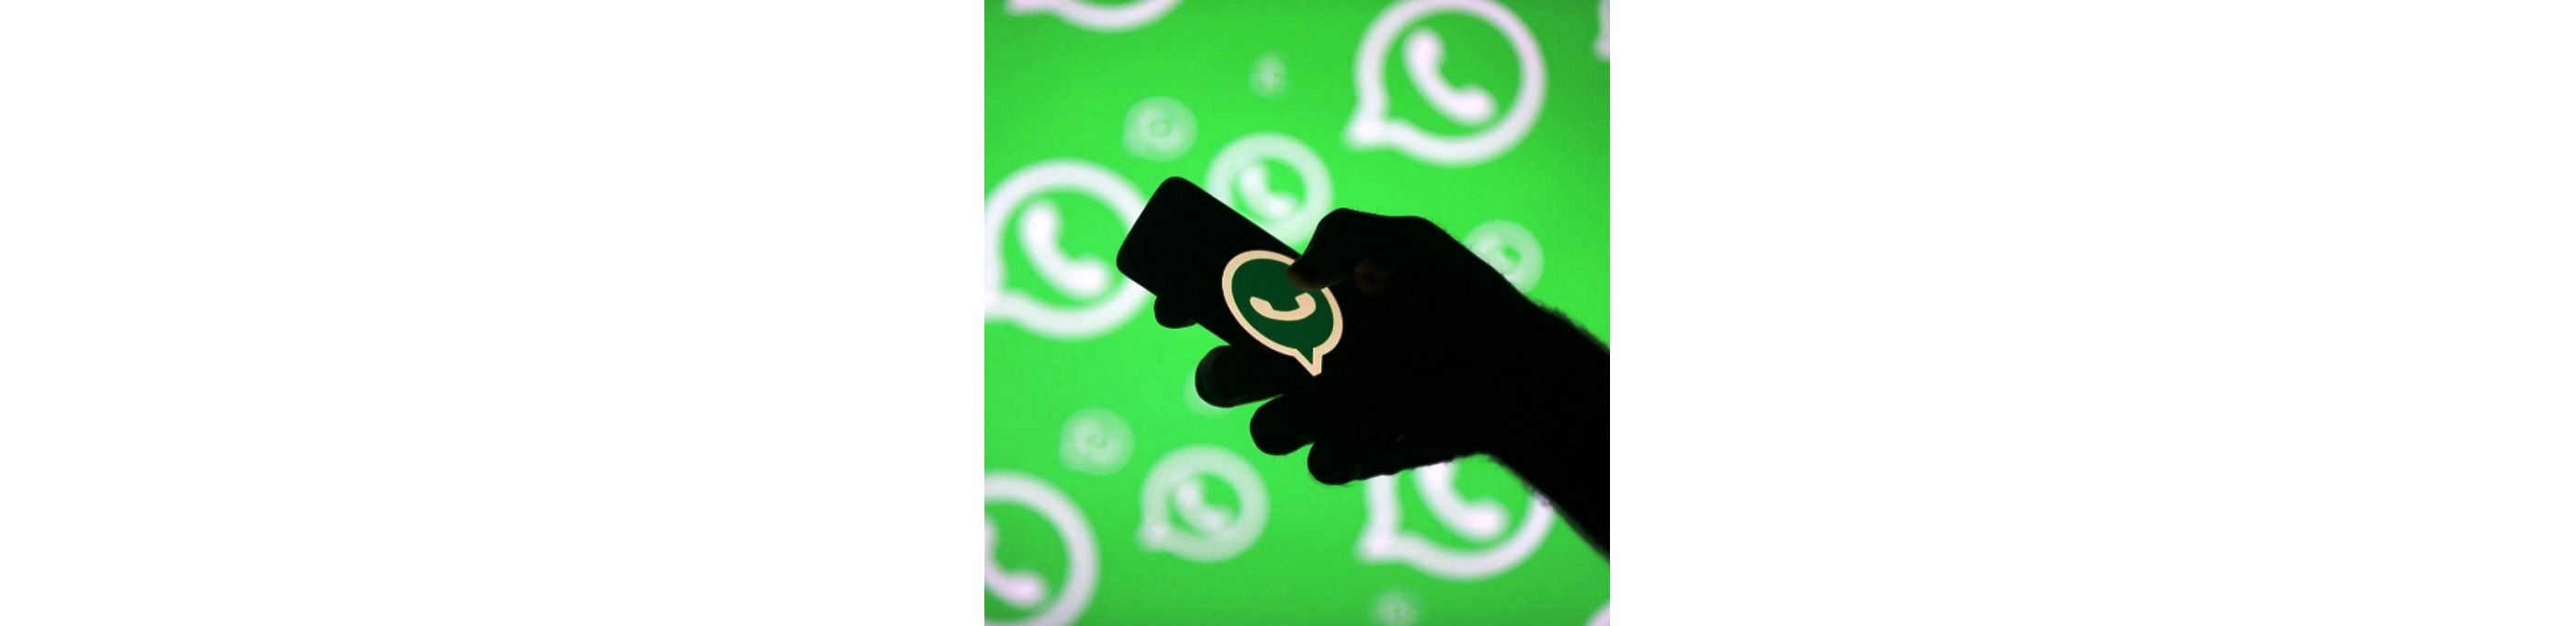 Приватность в WhatsApp под угрозой?